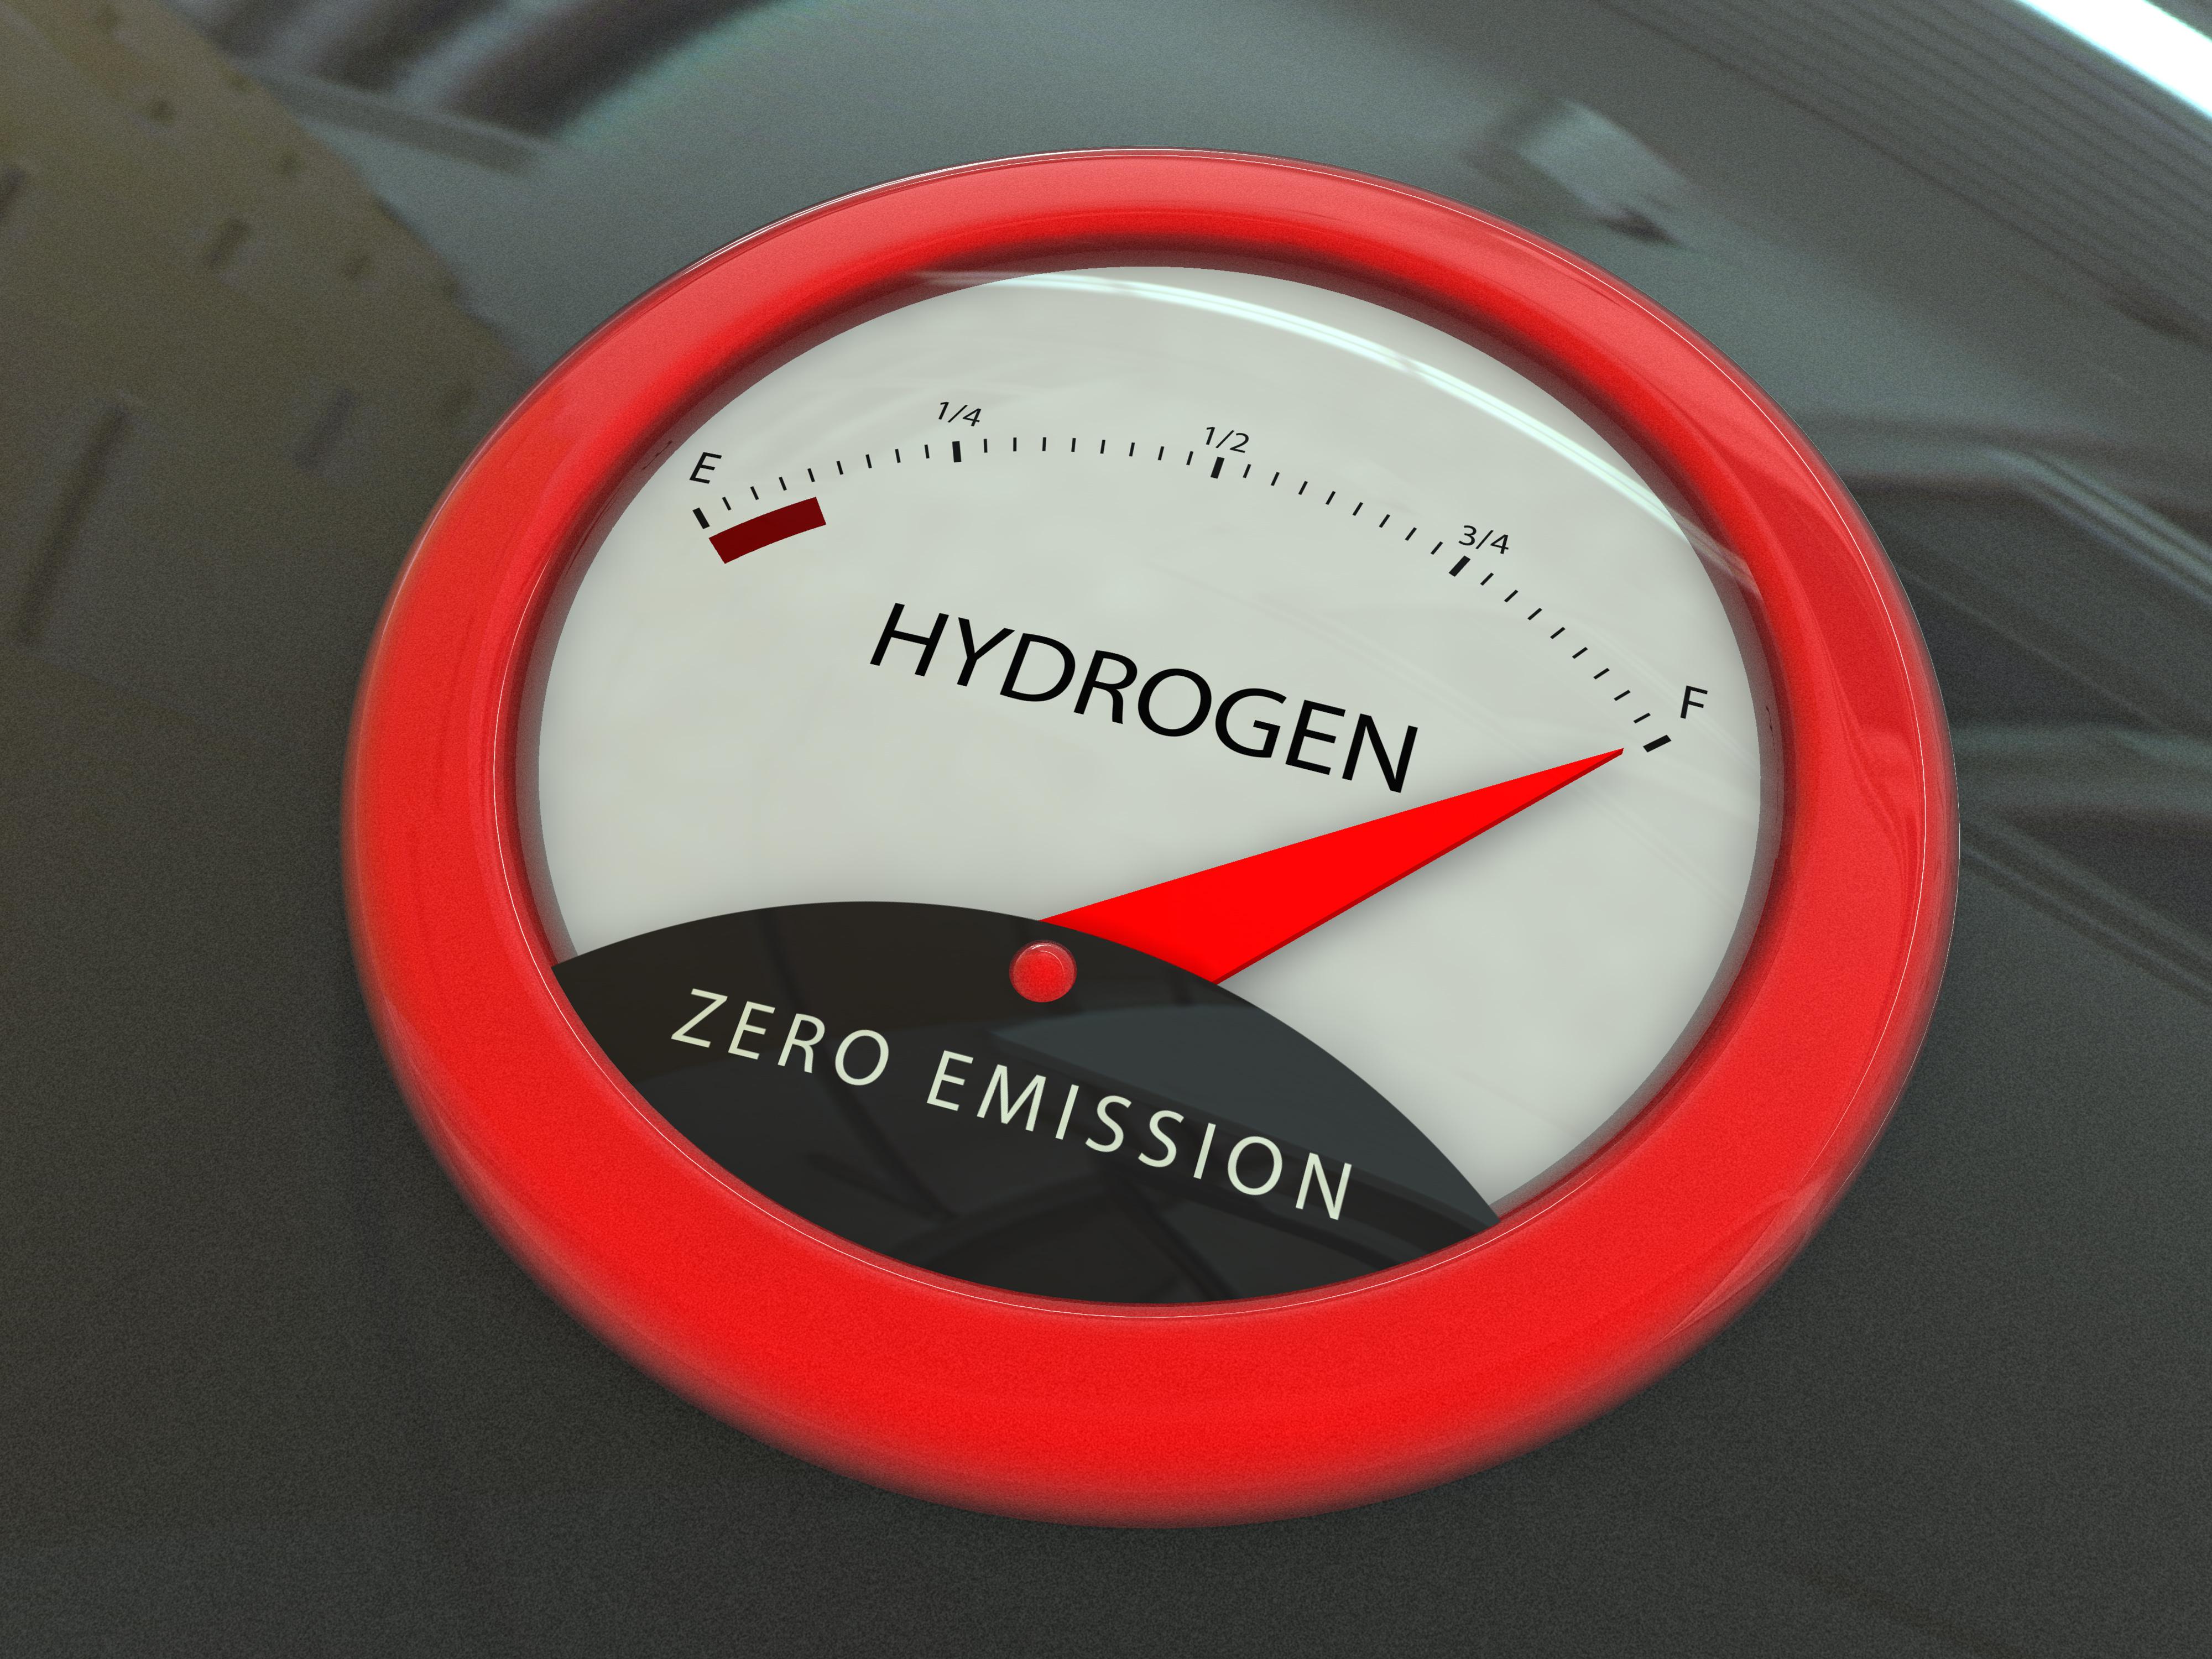 Mase seleziona piani di decarbonizzazione con idrogeno in settori 'hard to abate'